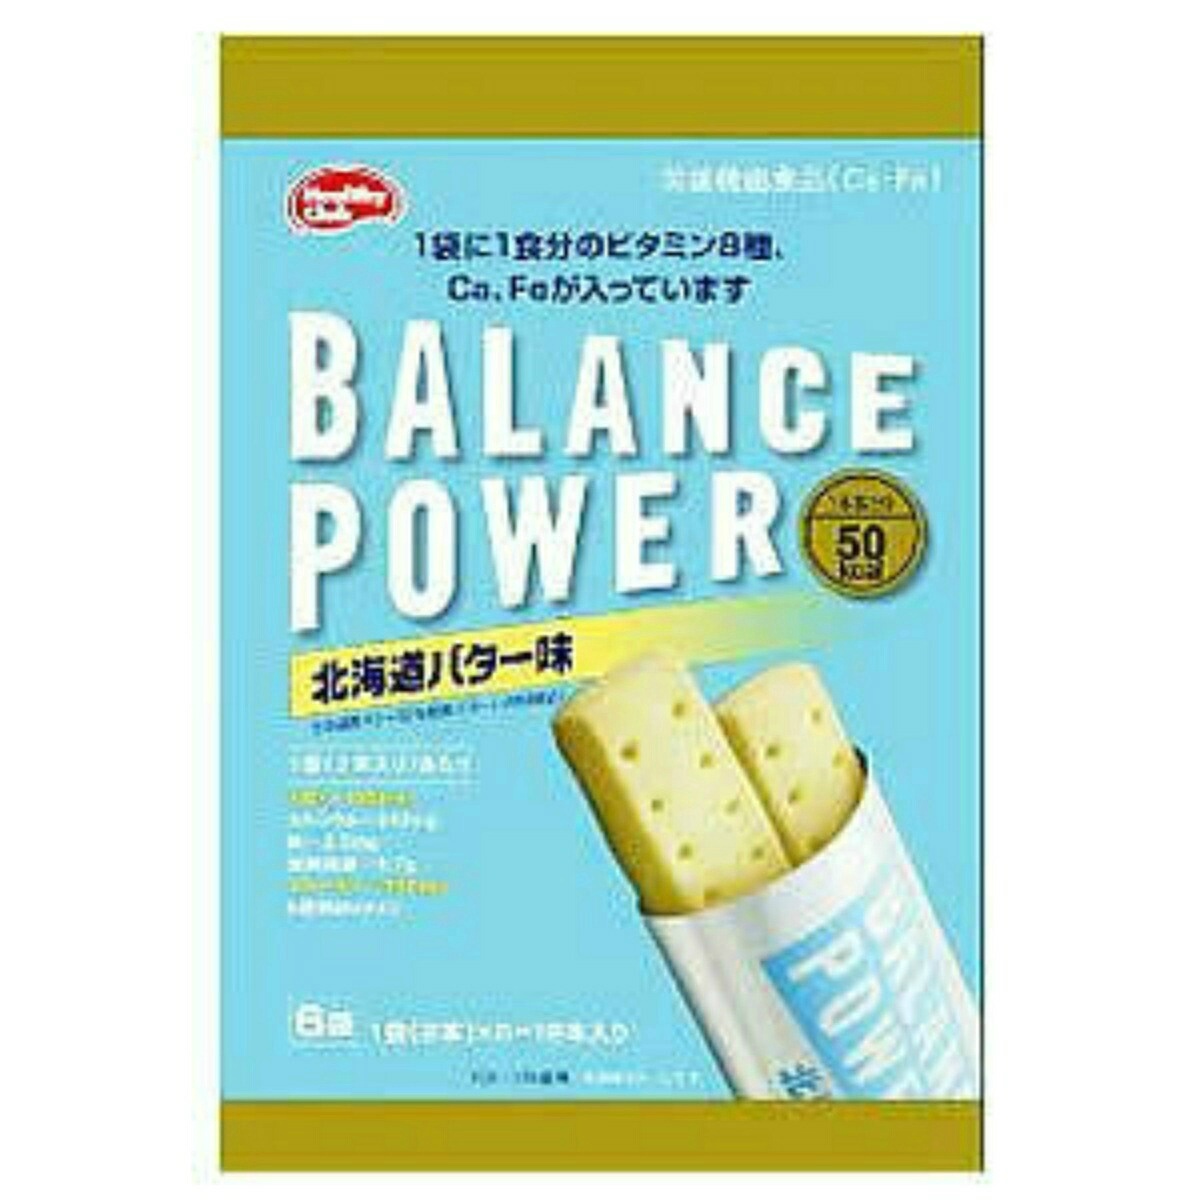 ハマダコンフェクト バランスパワー 北海道バター 6袋入×1セット バランスパワー バランス栄養、栄養調整食品の商品画像